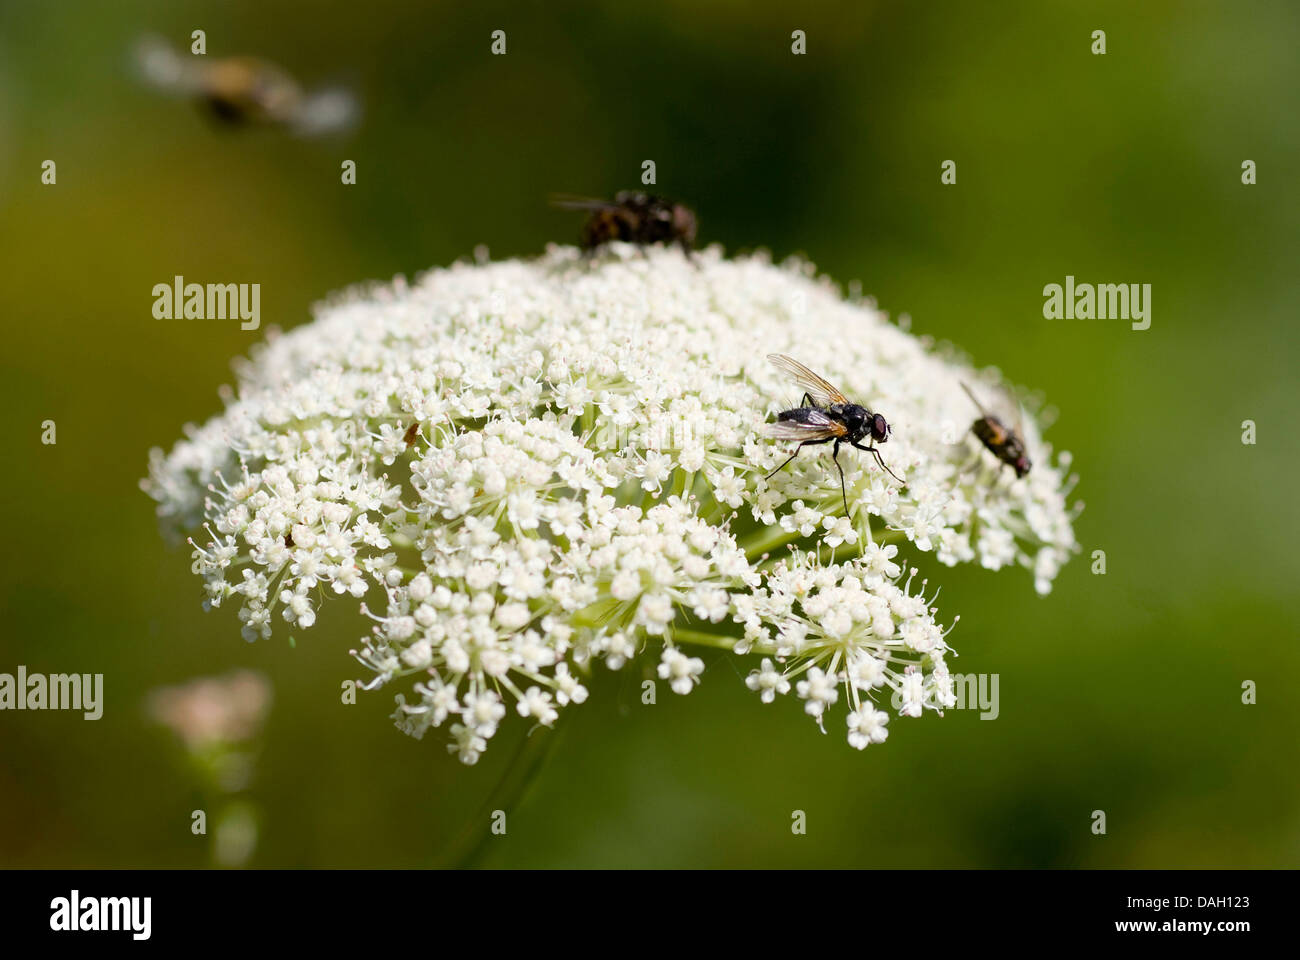 Laserwort (Laserpitium siler), blooming with flies, Switzerland Stock Photo